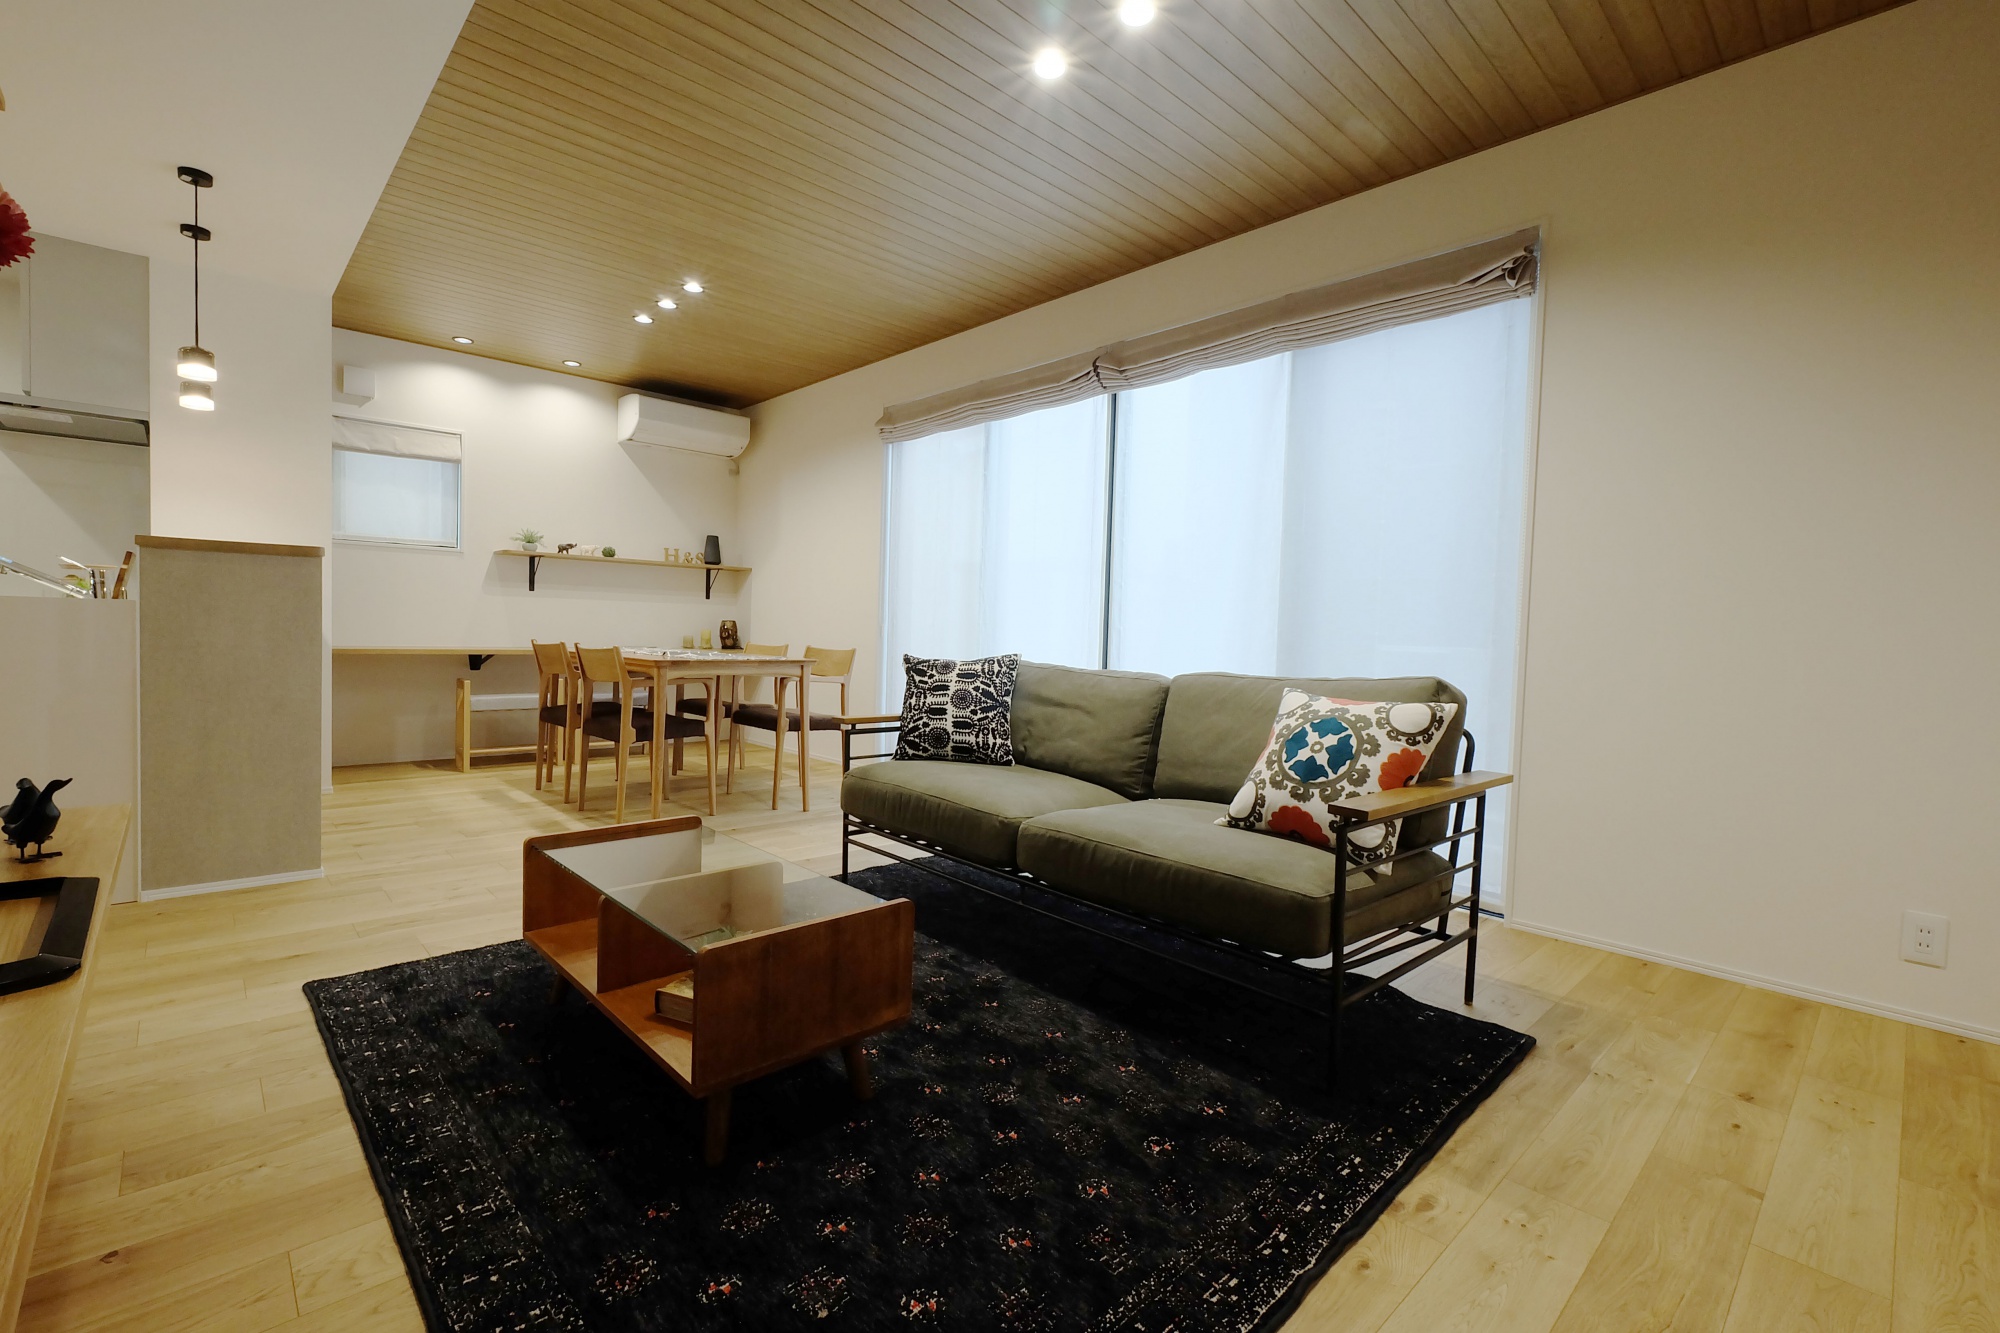 丸和ホーム｜富山市｜ 共働き家族の家 モデルハウス